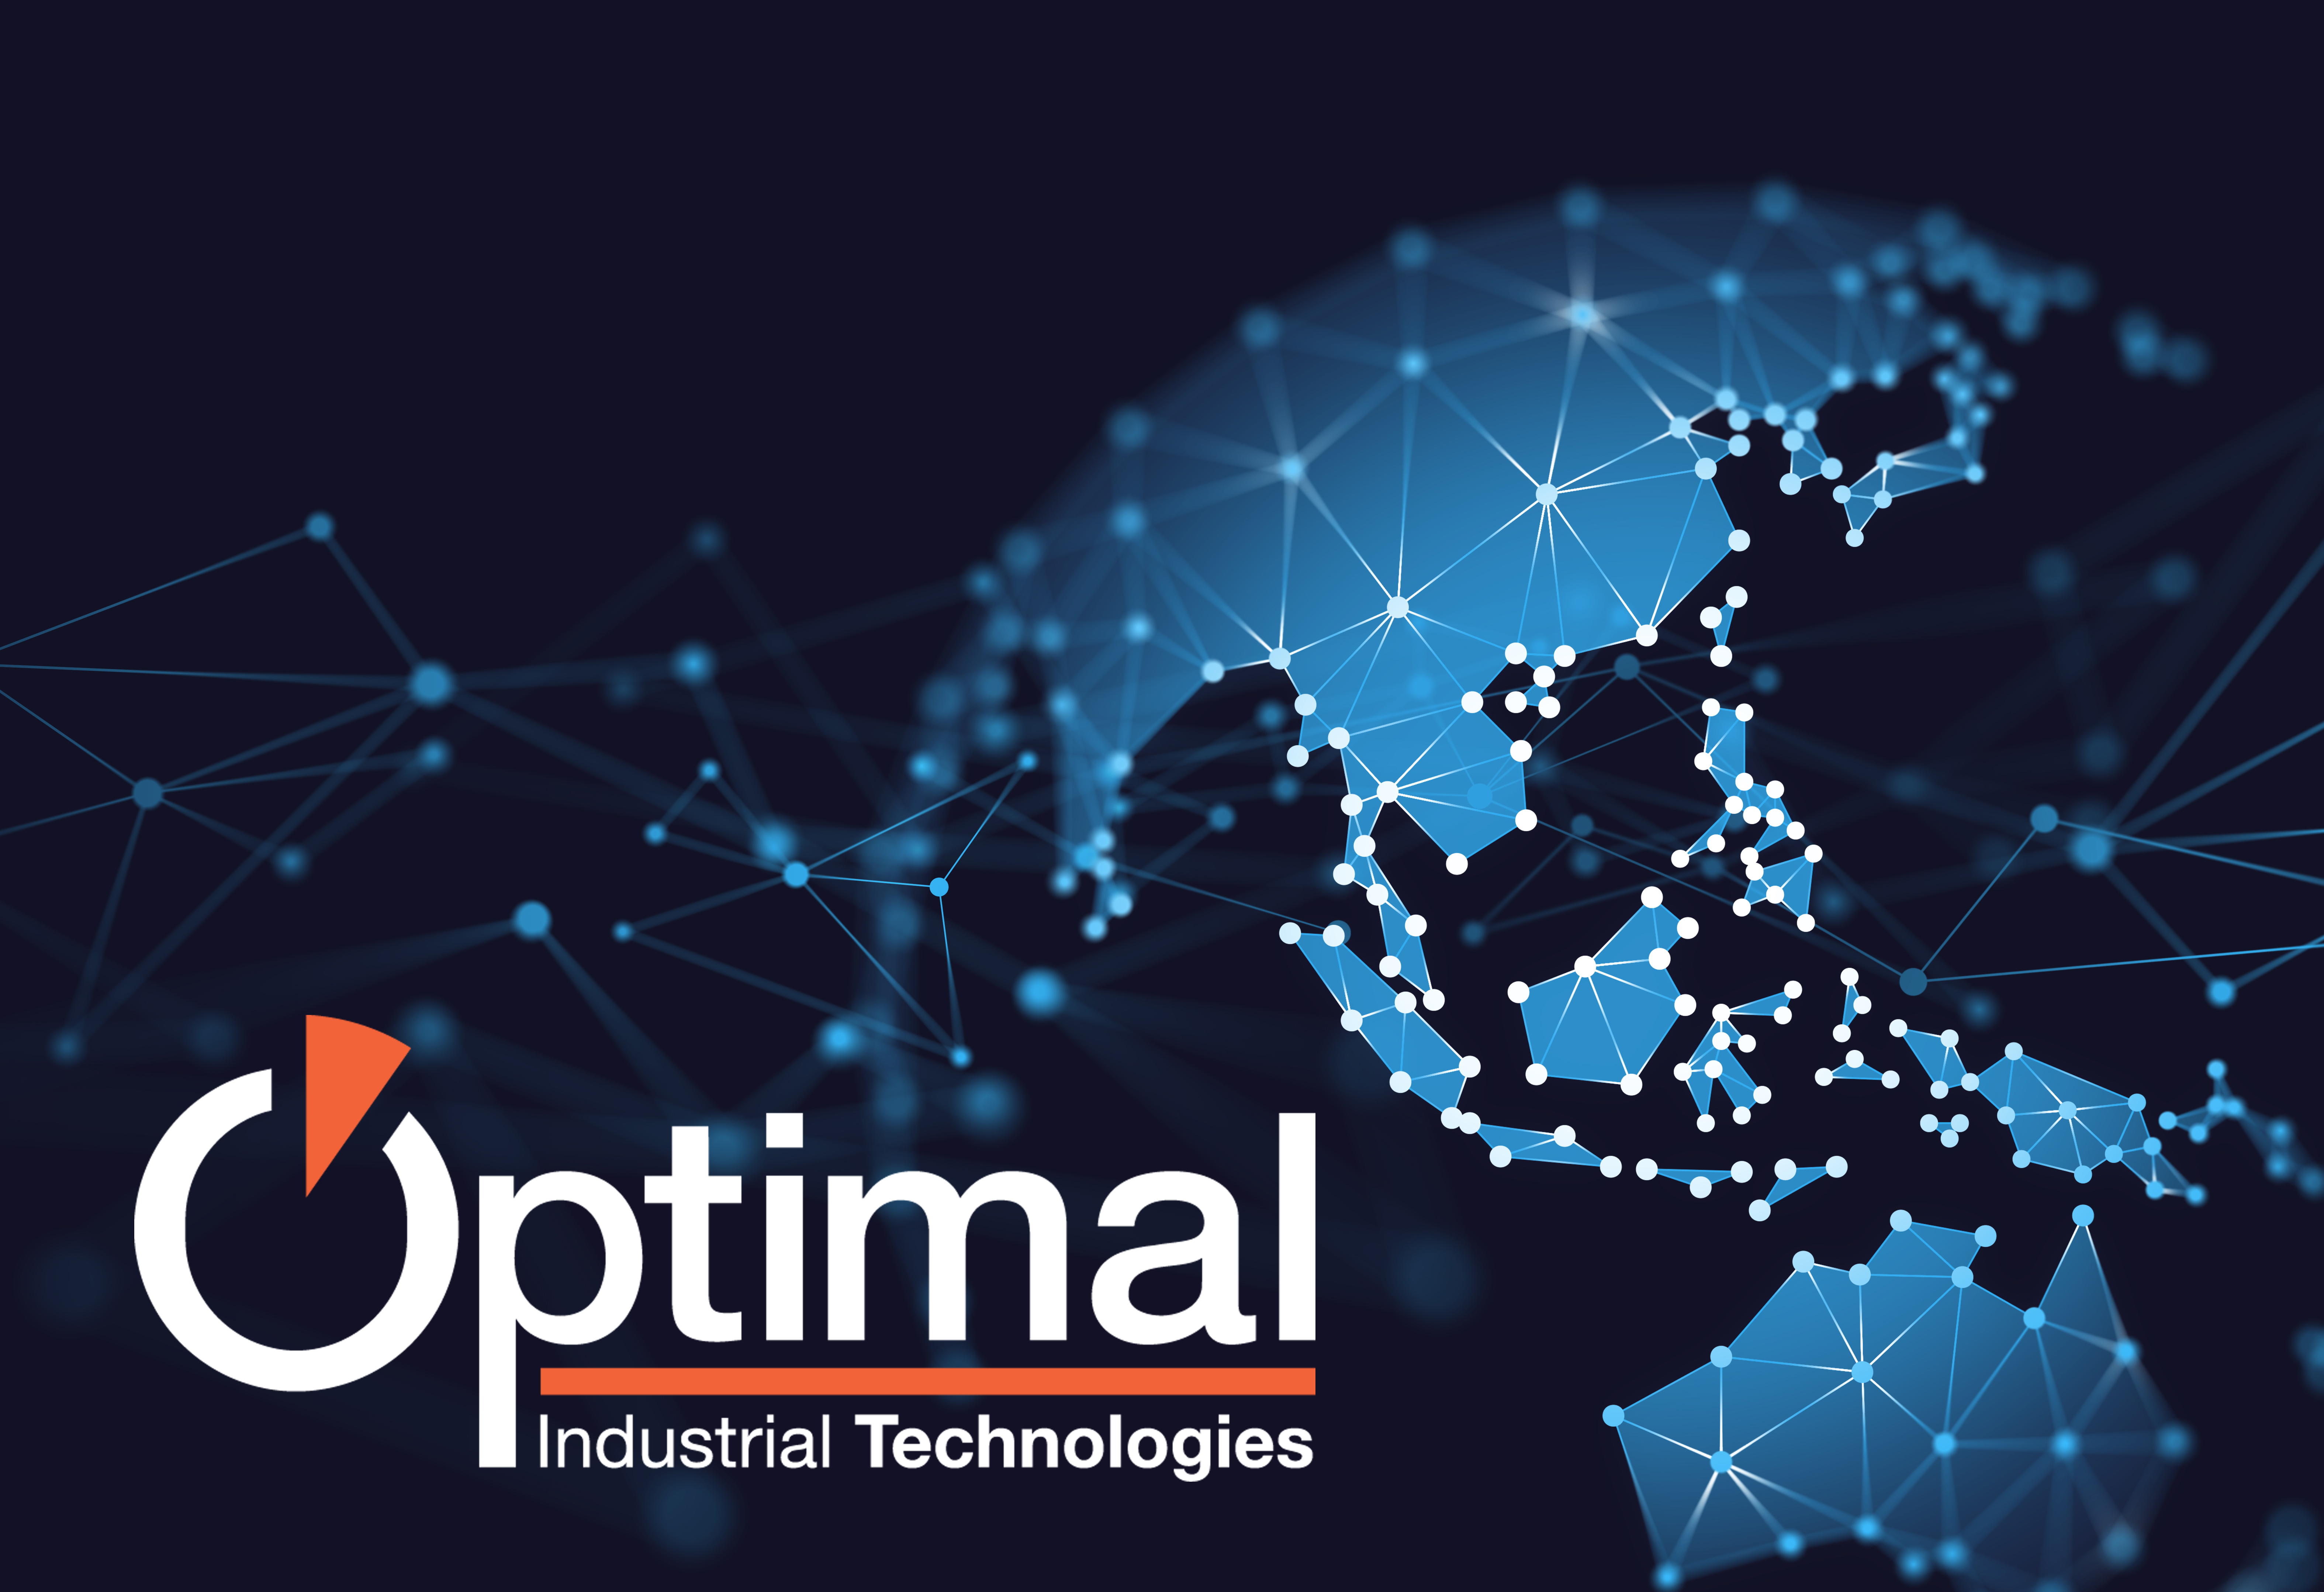 Optimal Industrial Technologies는 새로운 임원을 임명하고 현지 지원을 강화하는 한편 전략적 파트너십을 강화하여 아시아 태평양(APAC) 지역에서의 입지를 확대하고 있습니다.